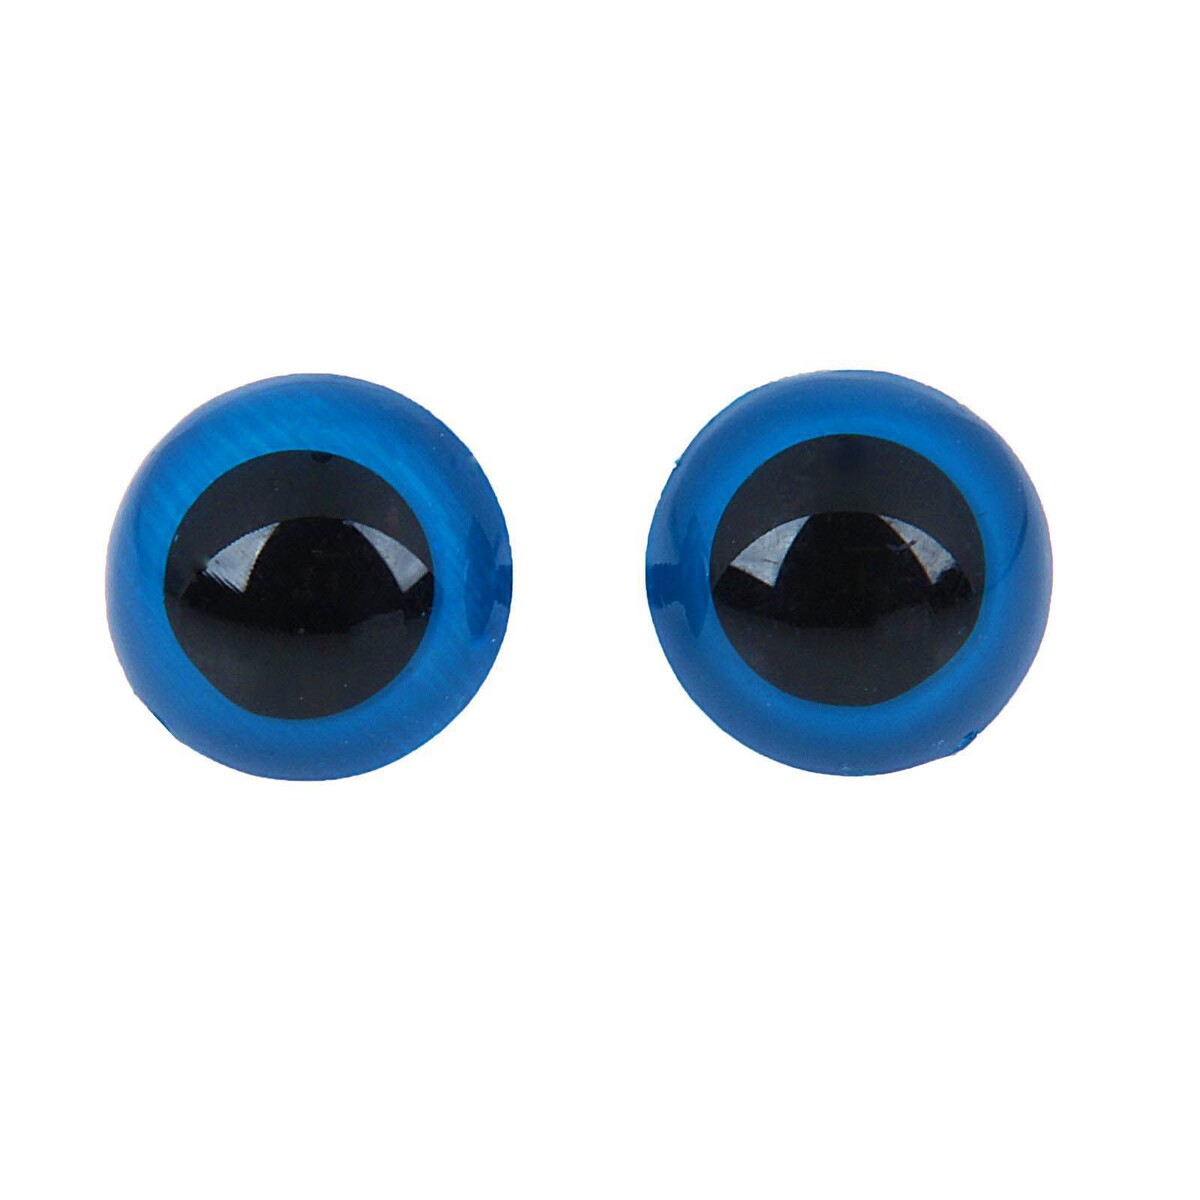 Глазки для кукол, винтовые с заглушками, полупрозрачные, набор 4 шт, цвет голубой, размер 1 шт: 2×2 см глазки для кукол винтовые с заглушками полупрозрачные набор 4 шт голубой размер 1 шт 2×2 см